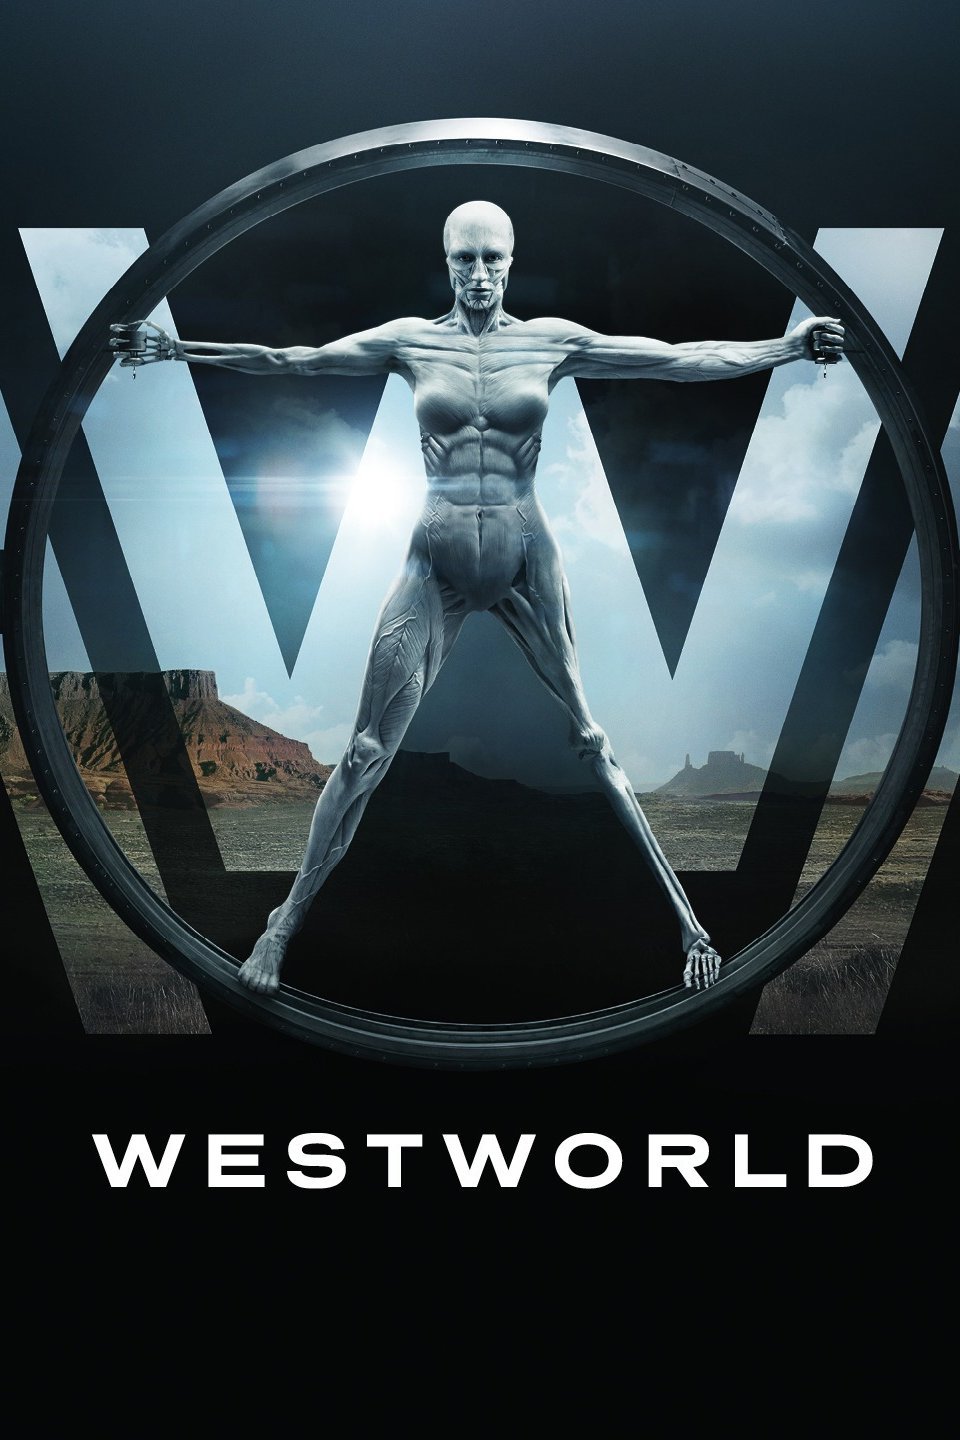 Westworld on HBO